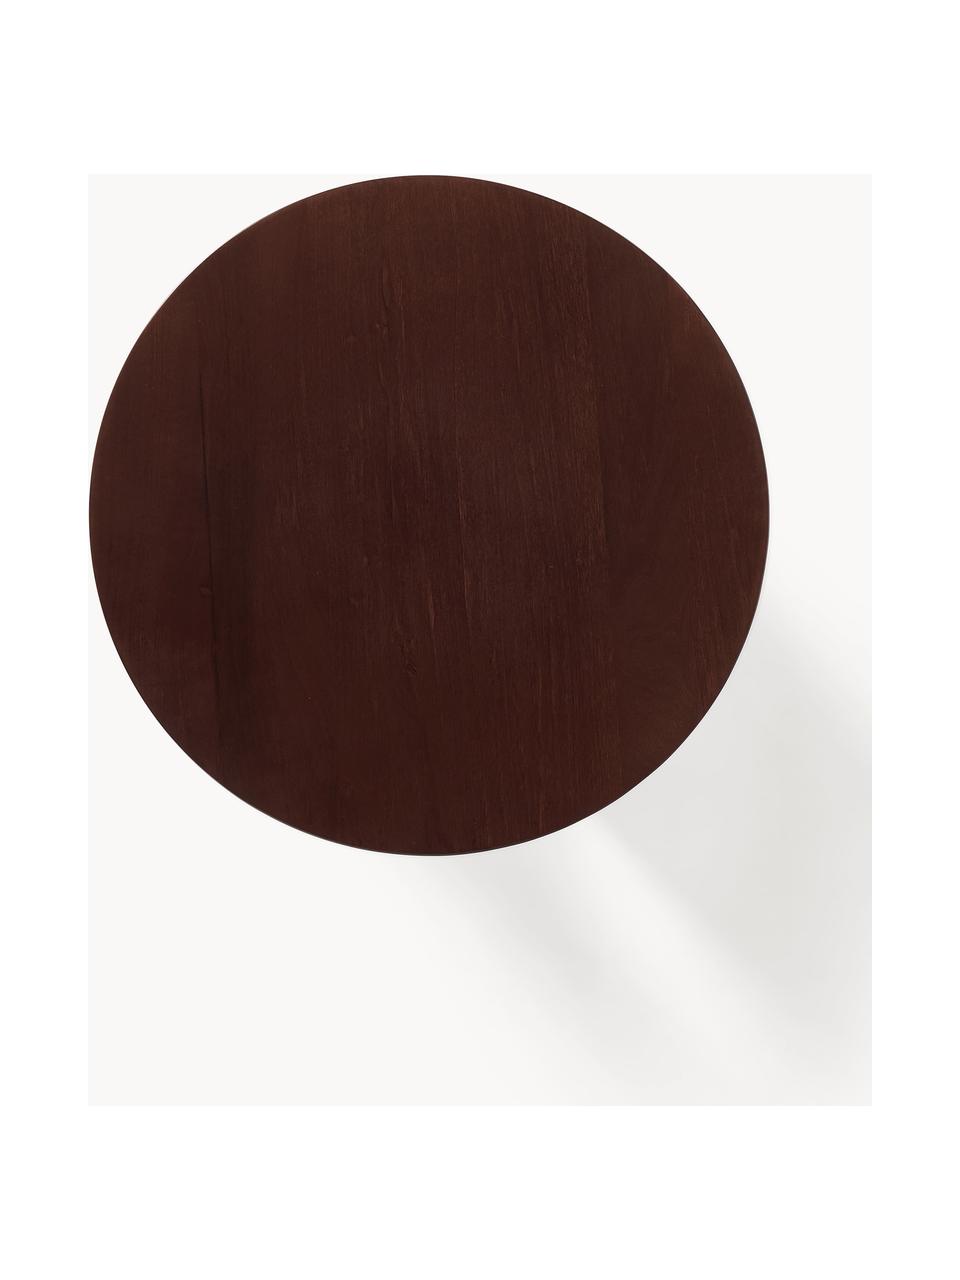 Runder Holz-Beistelltisch Miya, Pappelholz, dunkelbraun lackiert, Ø 53 x H 55 cm